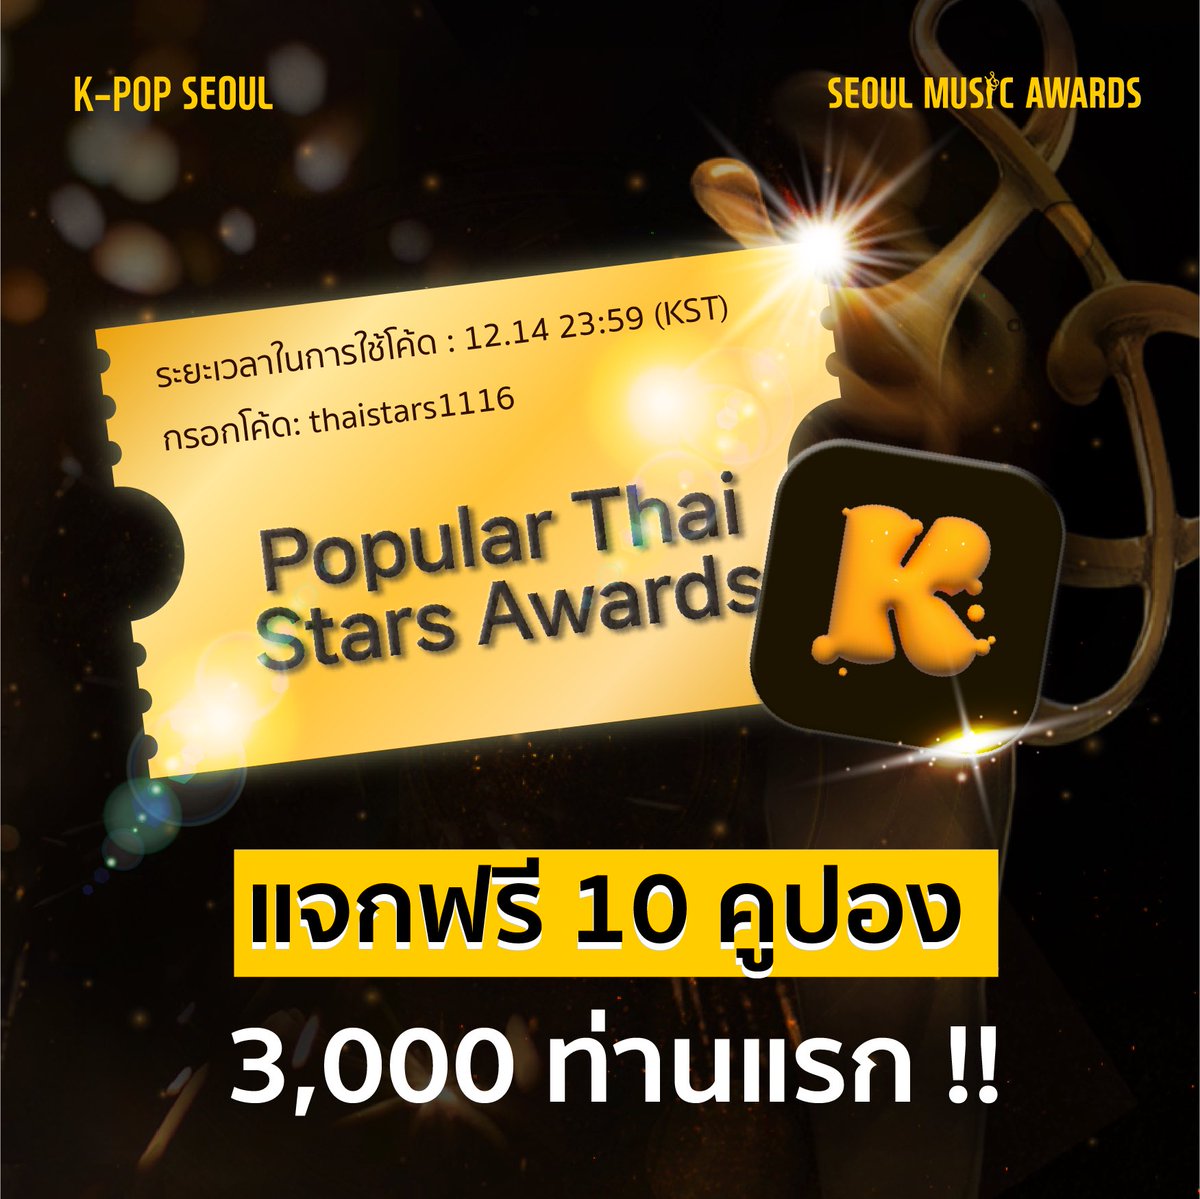 #33rdSeoulMusicAwardsinBKK

ในครั้งนี้มี Popular Thai Stars Awards
ร่วมโหวตให้ศิลปินที่คุณชื่นชอบได้แล้ววันนี้
ผ่าน APP “K-POP SEOUL” @fanboost_Inc

🎁พิเศษ✨รับไปเลยคูปองสำหรับใช้โหวตผ่านแอพ
สำหรับ 3,000 ท่านแรกที่กรอกโค้ดทัน

⏰ระยะเวลาในการใช้โค้ด : 14 ธันวาคม (23:59KST)…